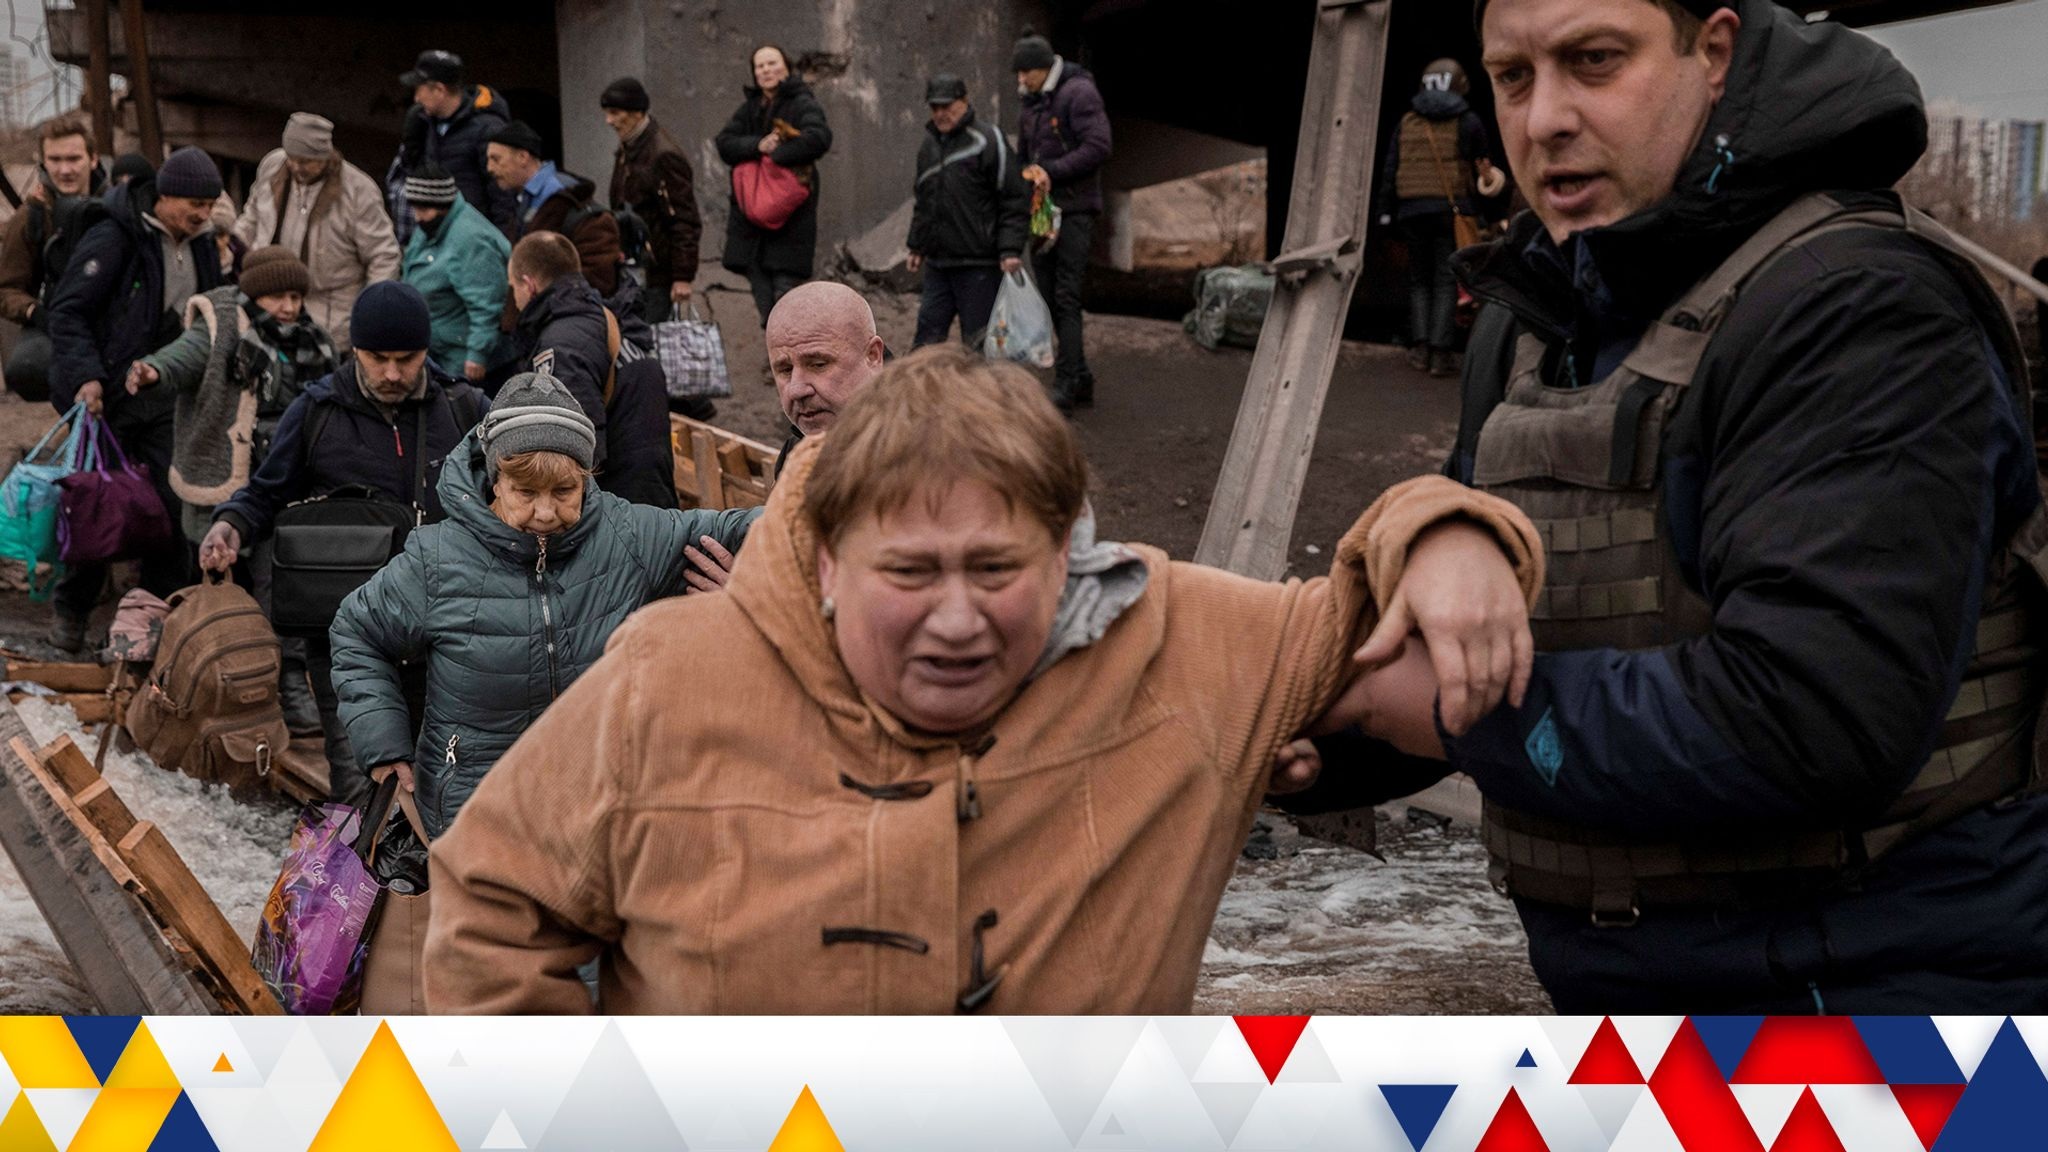 Chiến sự đã buộc nhiều người dân Ukraine phải sơ tán, bỏ lại nhà cửa (Ảnh minh họa: Skynews).